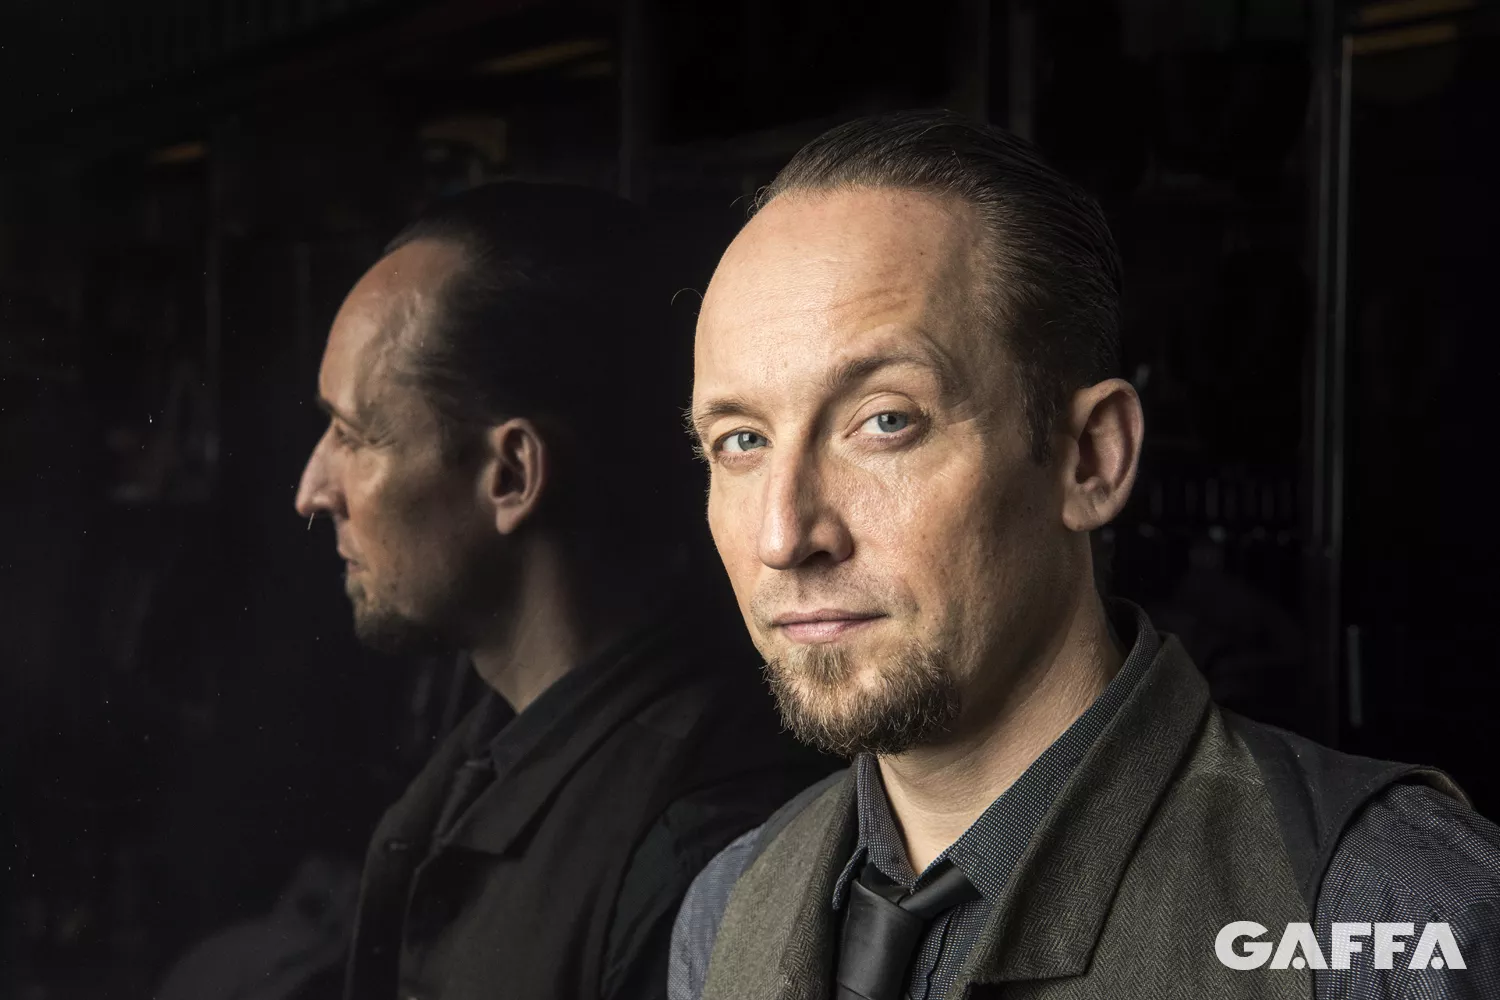 Nibe Festival-aktuelle Michael Poulsen: Før kunne jeg ikke brække Volbeat-hatten af med et koben